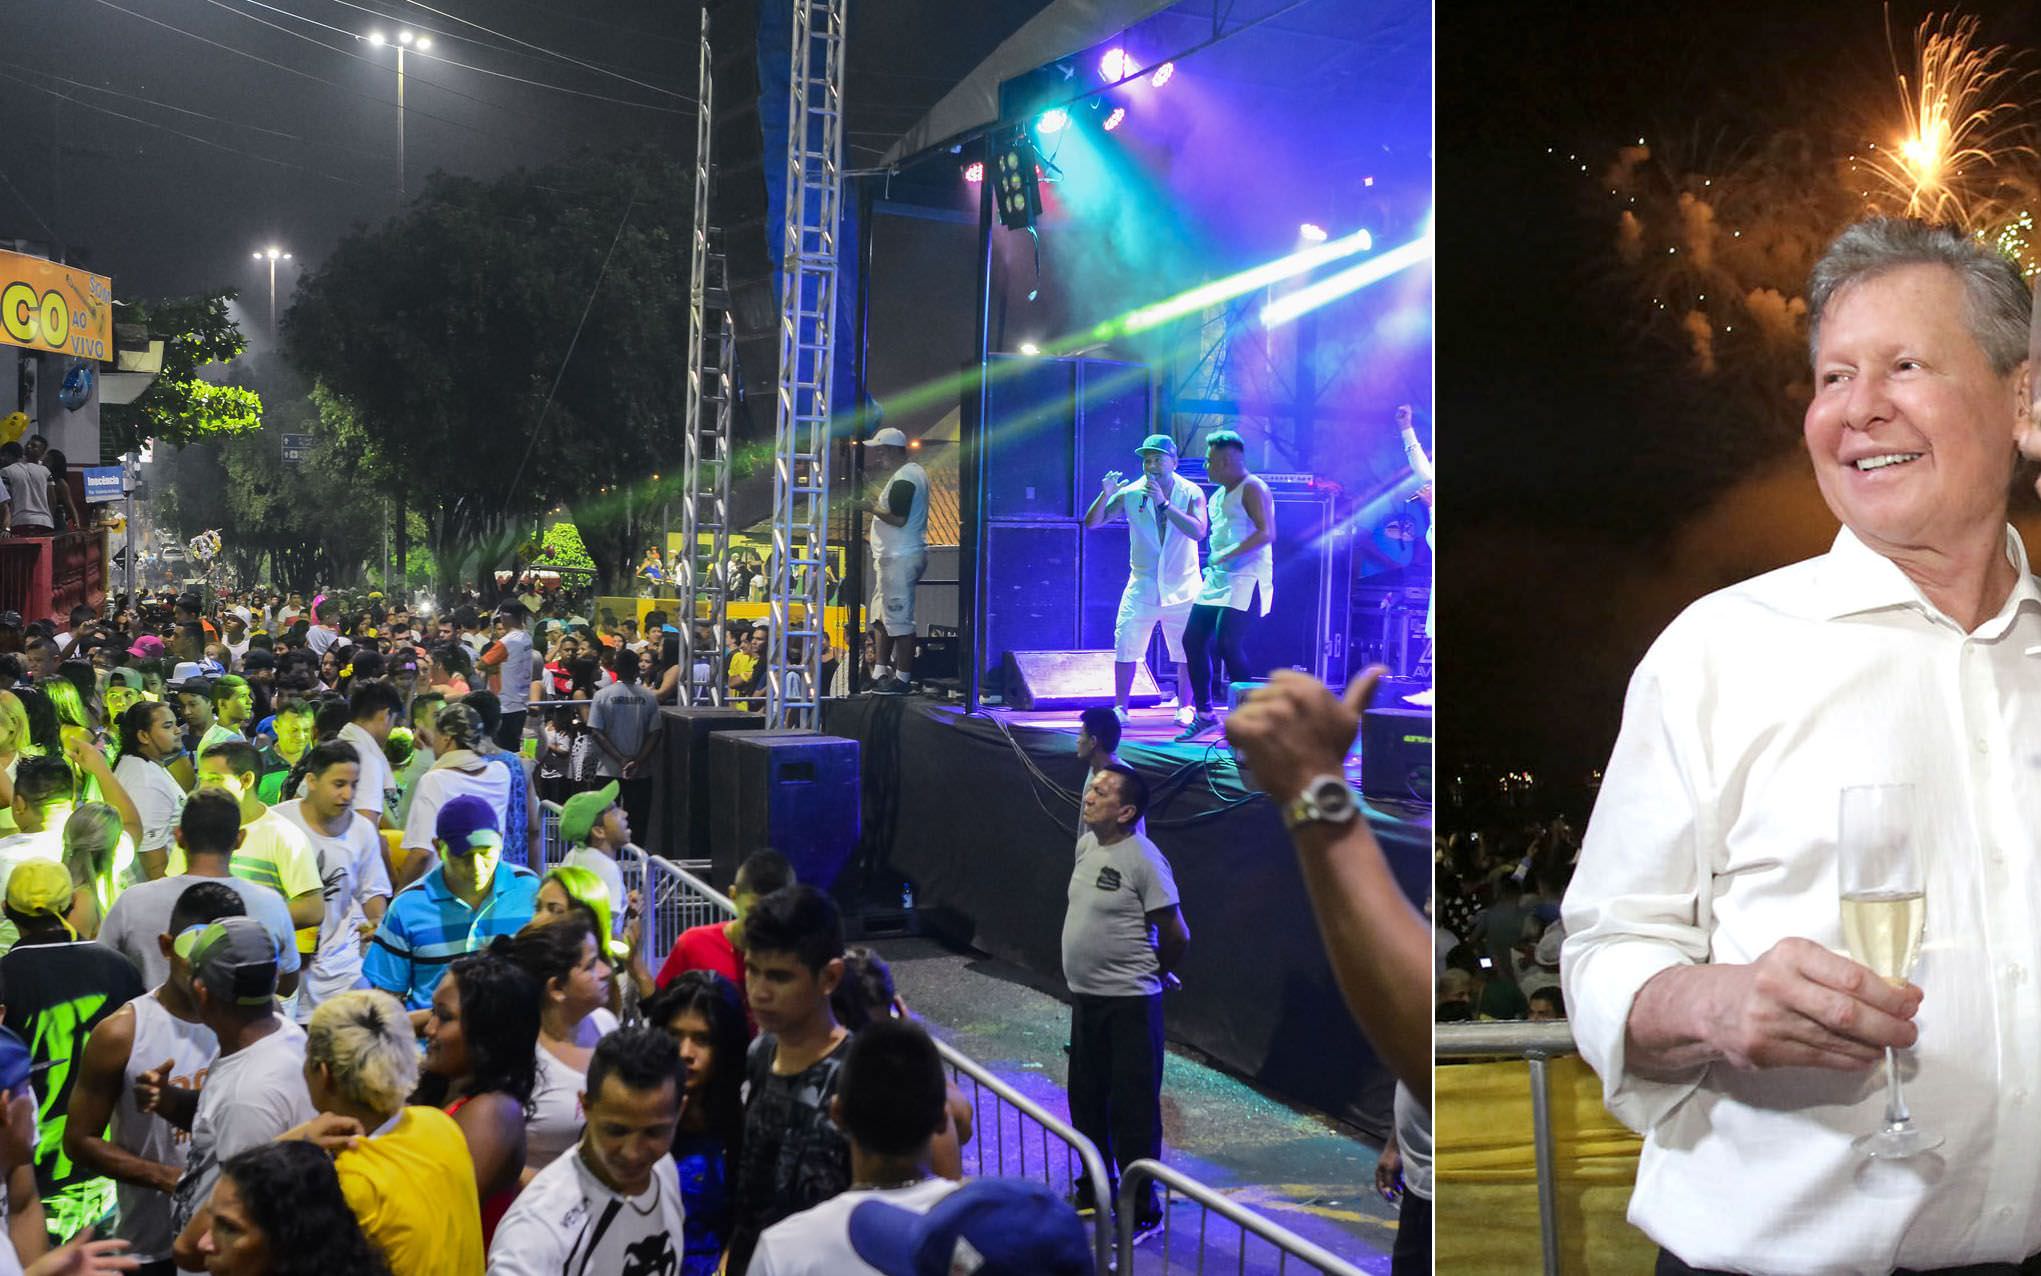 Festa anunciada pela Prefeitura de Manaus vai custar mais com 4 artistas nacionais do que com 130 locais